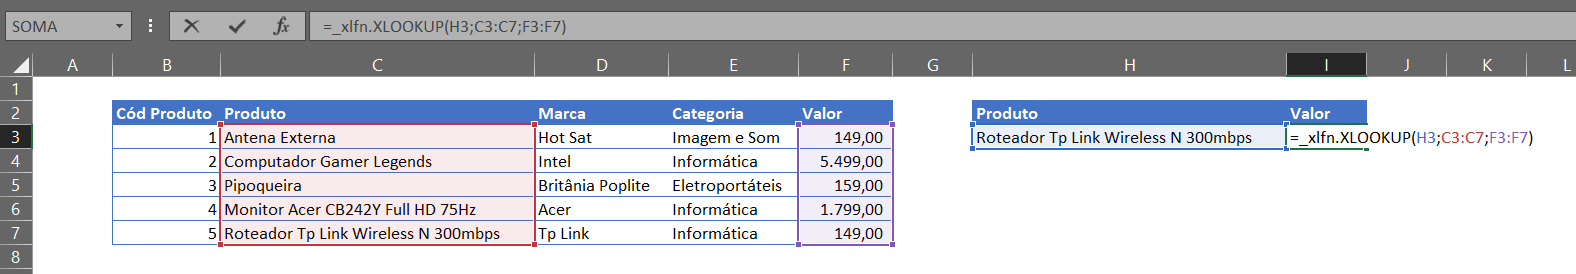 Erro _xlfn no Excel